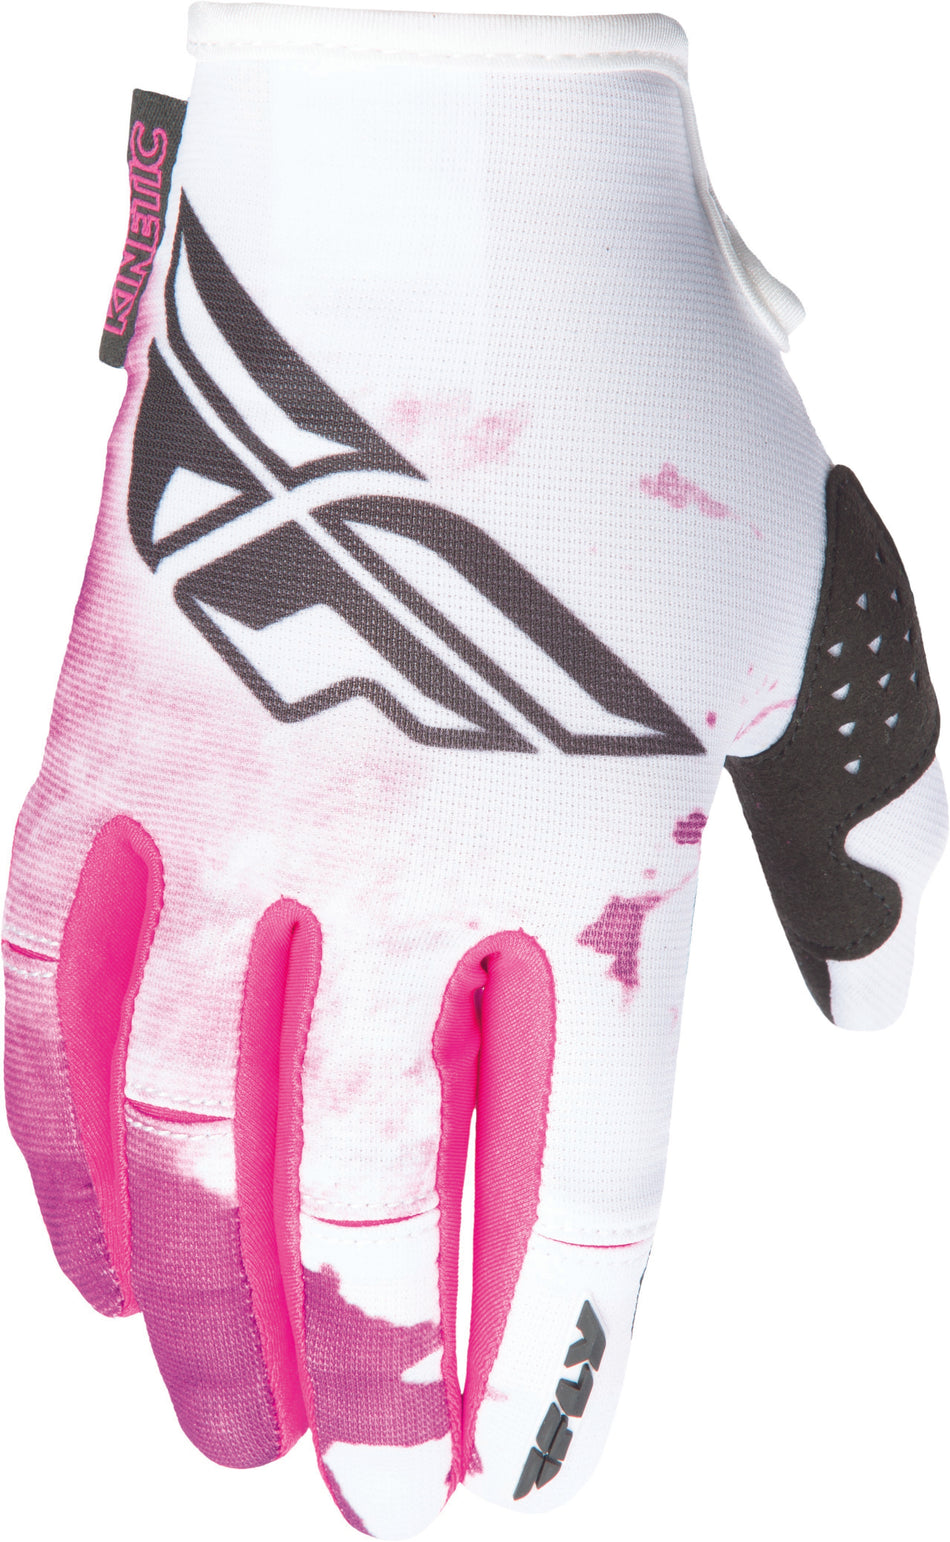 FLY RACING Kinetic Womens Glove Pink/Purple X 370-61209